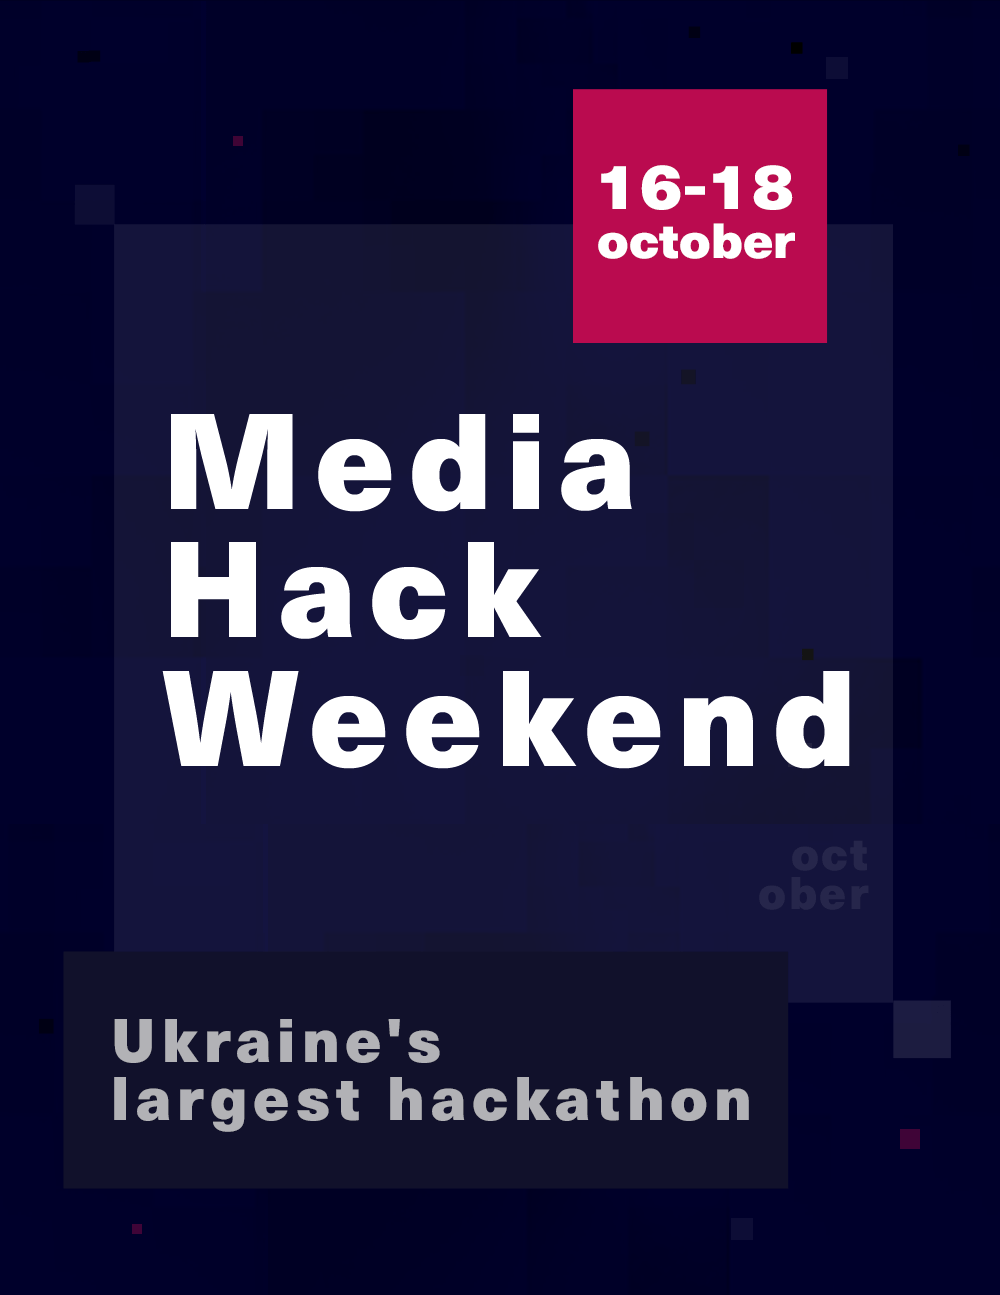 Media Hack Weekend